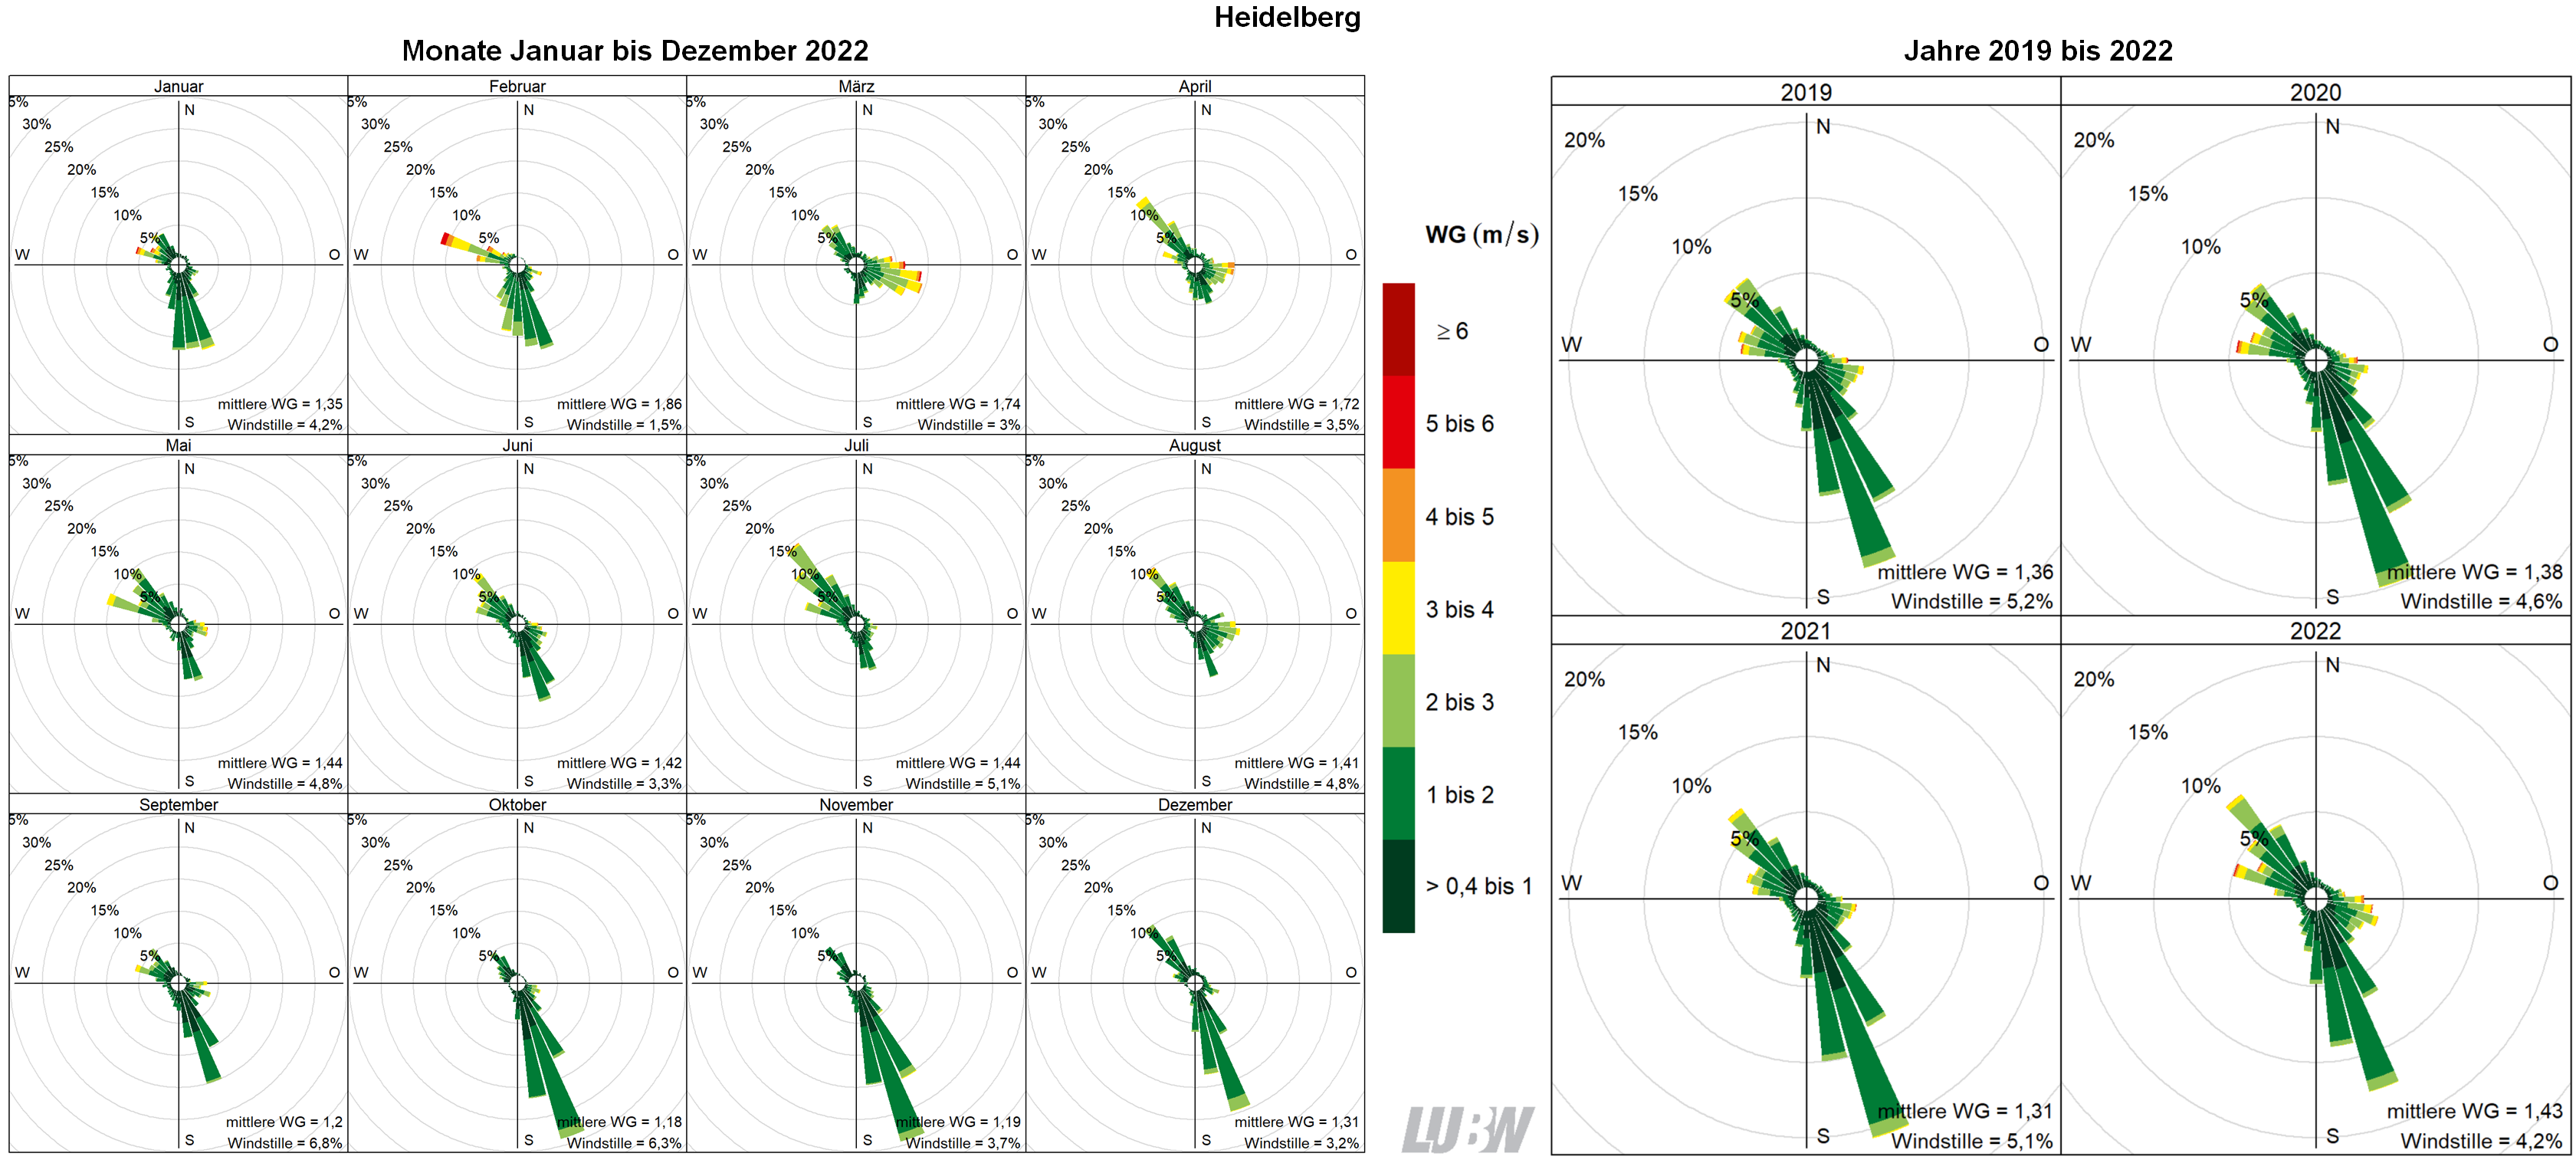  Mitttlere Windverteilung als Windrosen für die Monate Januar bis Dezember 2022 (linke Abbildung) sowie für die Jahre 2019 bis 2022 (rechte Abbildung) für den Standort Heidelberg. Weitere Informationen im umliegenden Text. 